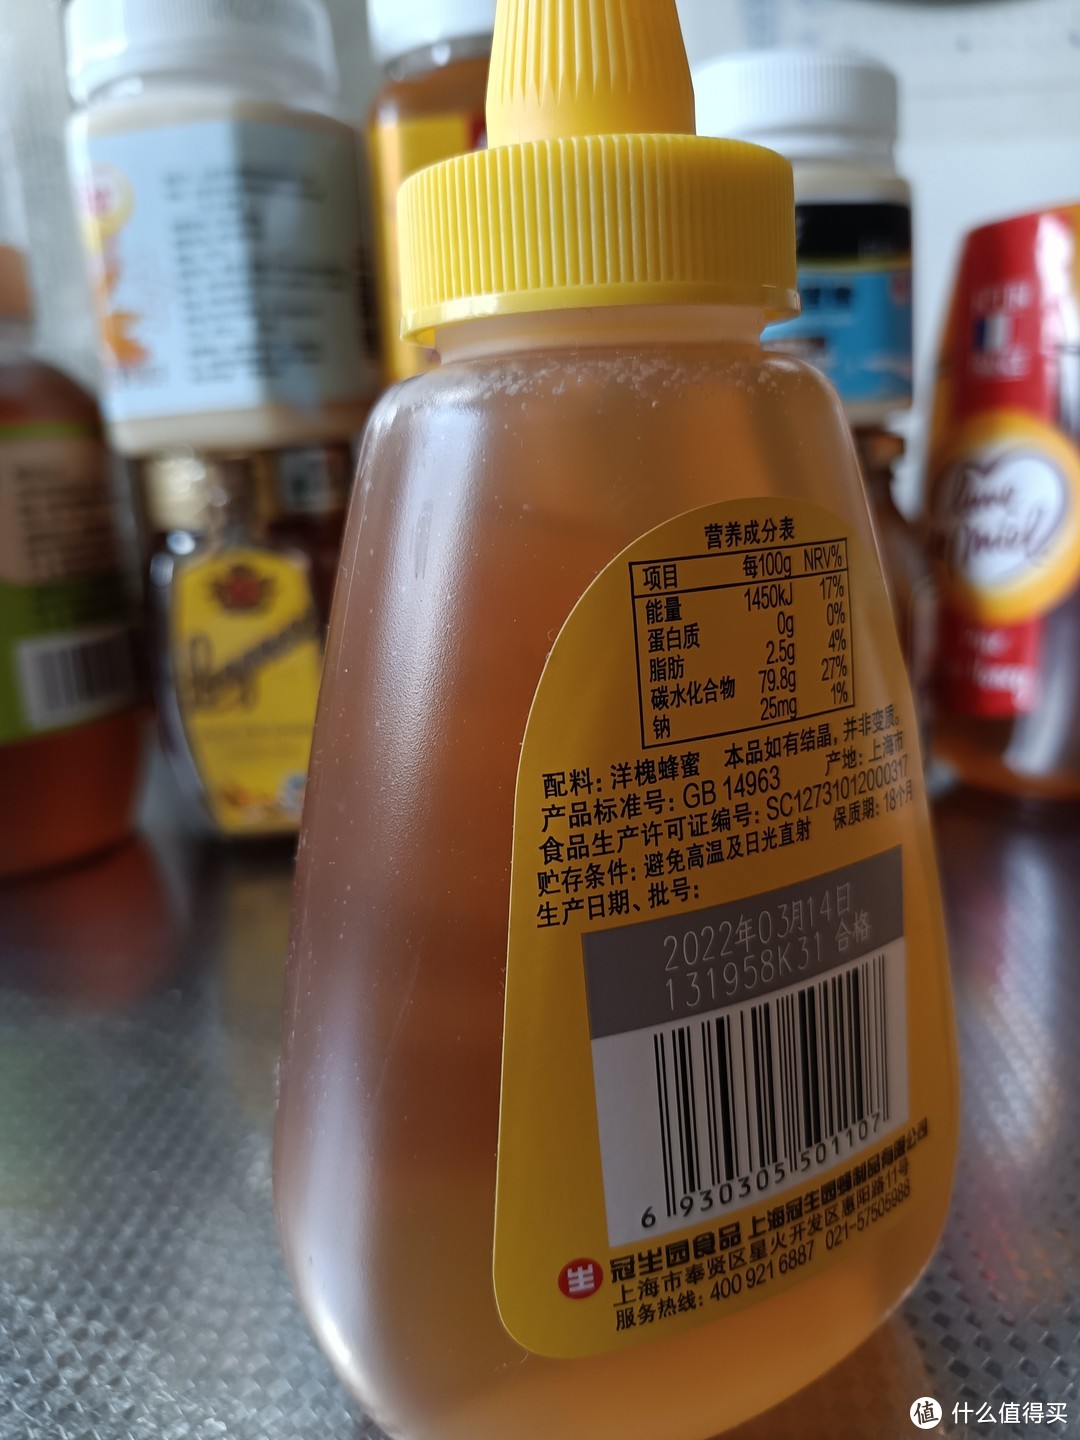 包含USDA和EU有机认证的进口蜂蜜，从哈尔科夫买过的11款蜂蜜产品来谈蜂蜜选购的关注点和选择方向